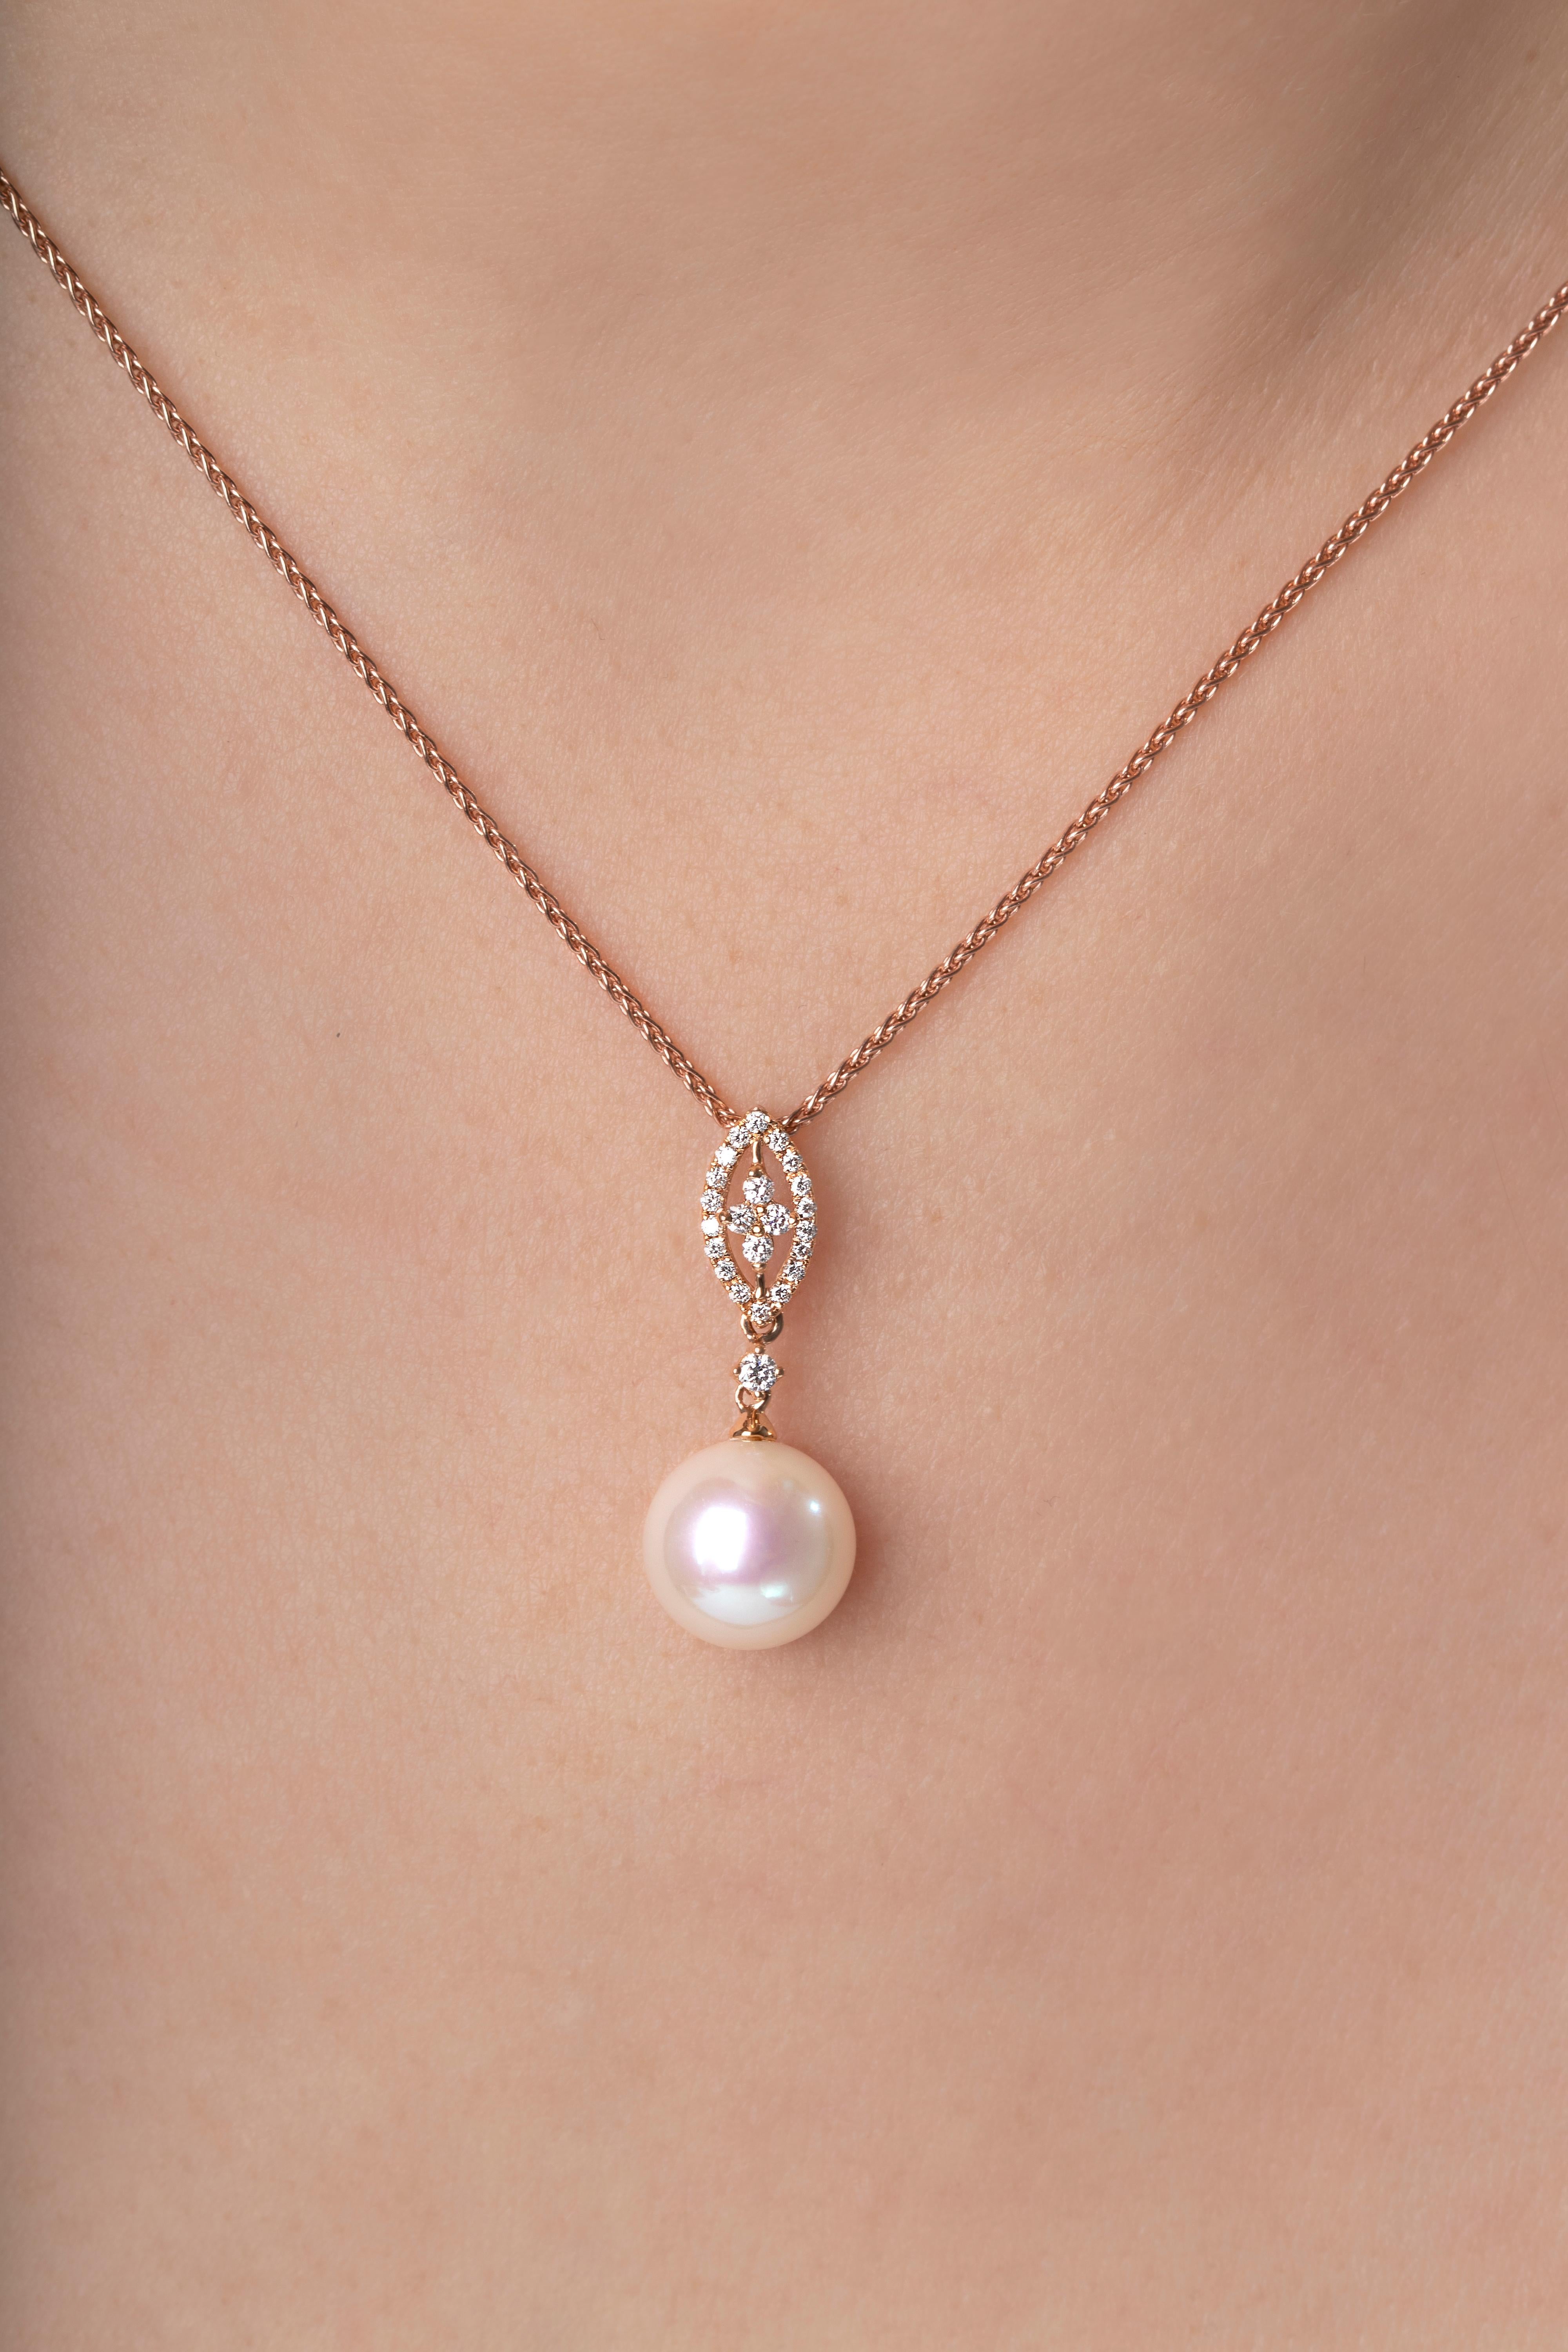 Moderne Yoko London Pendentif en or rose 18 carats avec perles d'eau douce et diamants